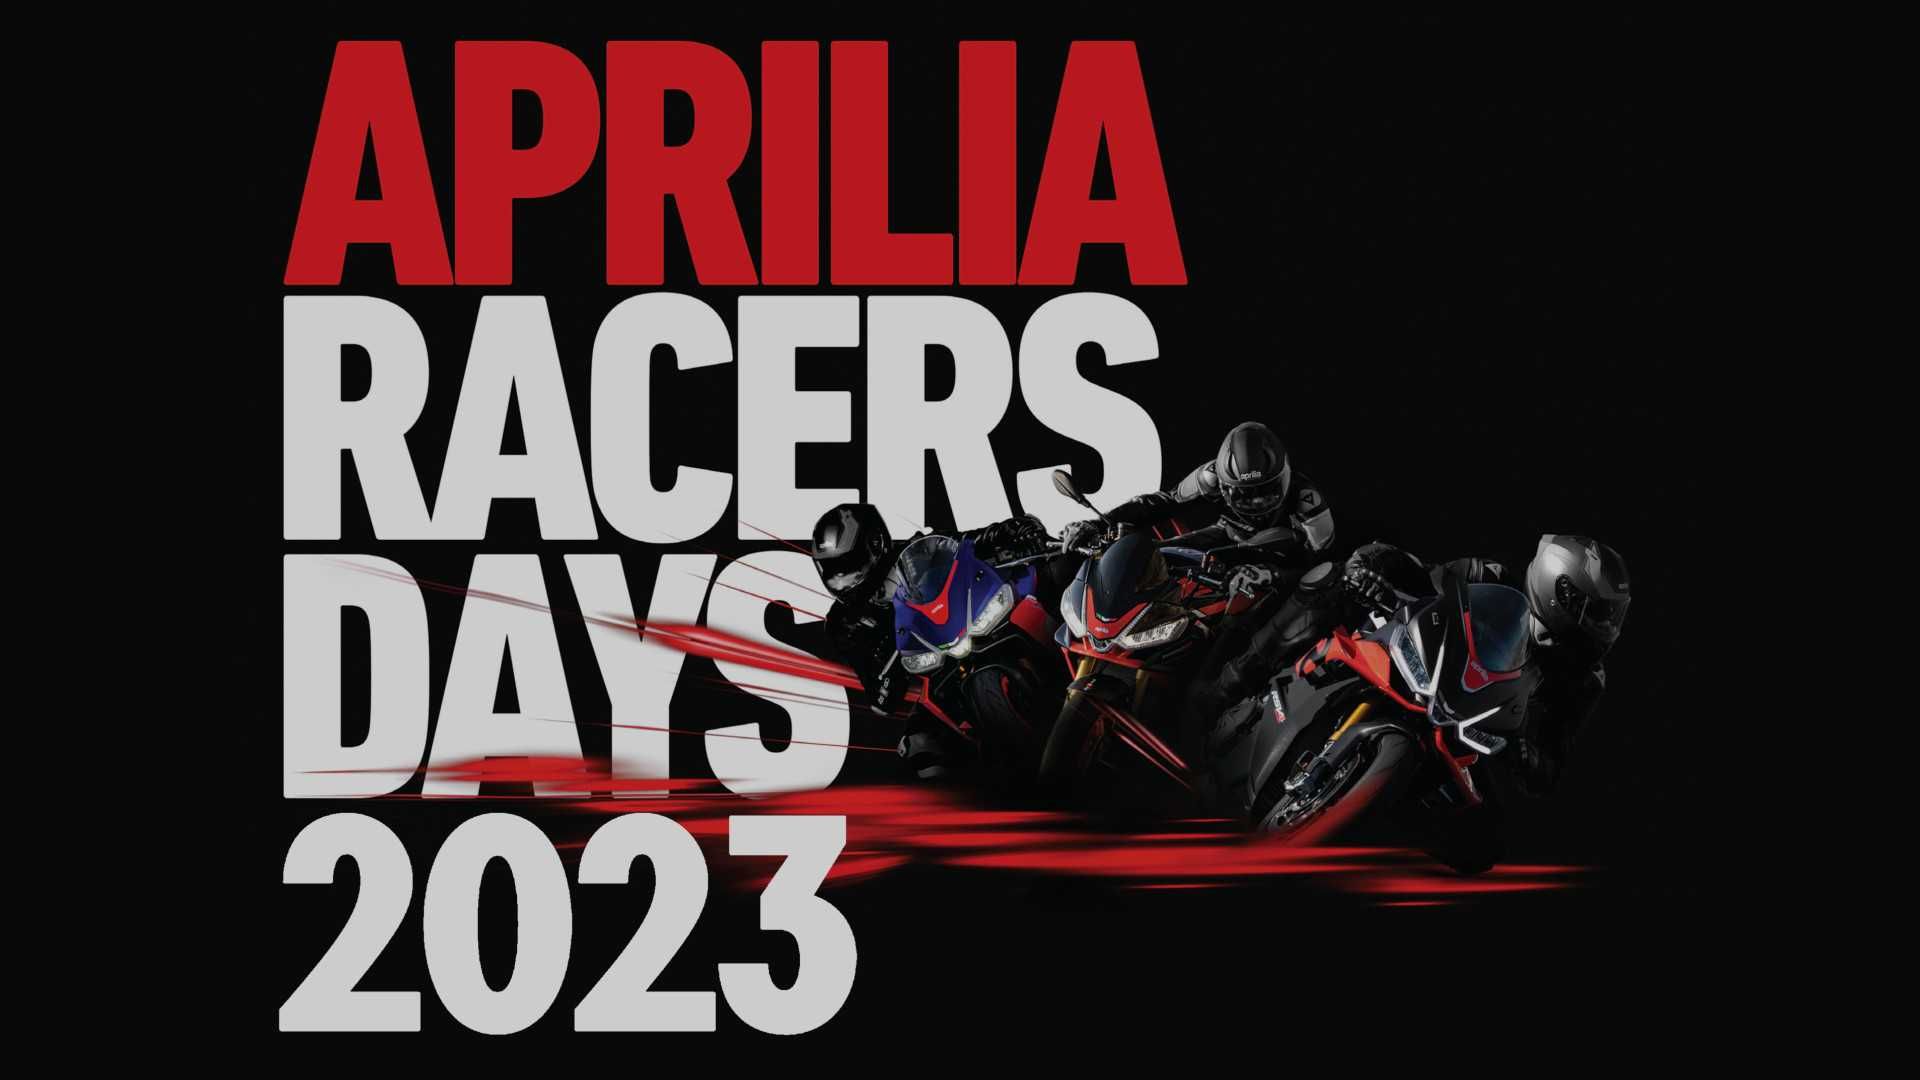 2023 Aprilia Racers Days Calendar Announces American,…